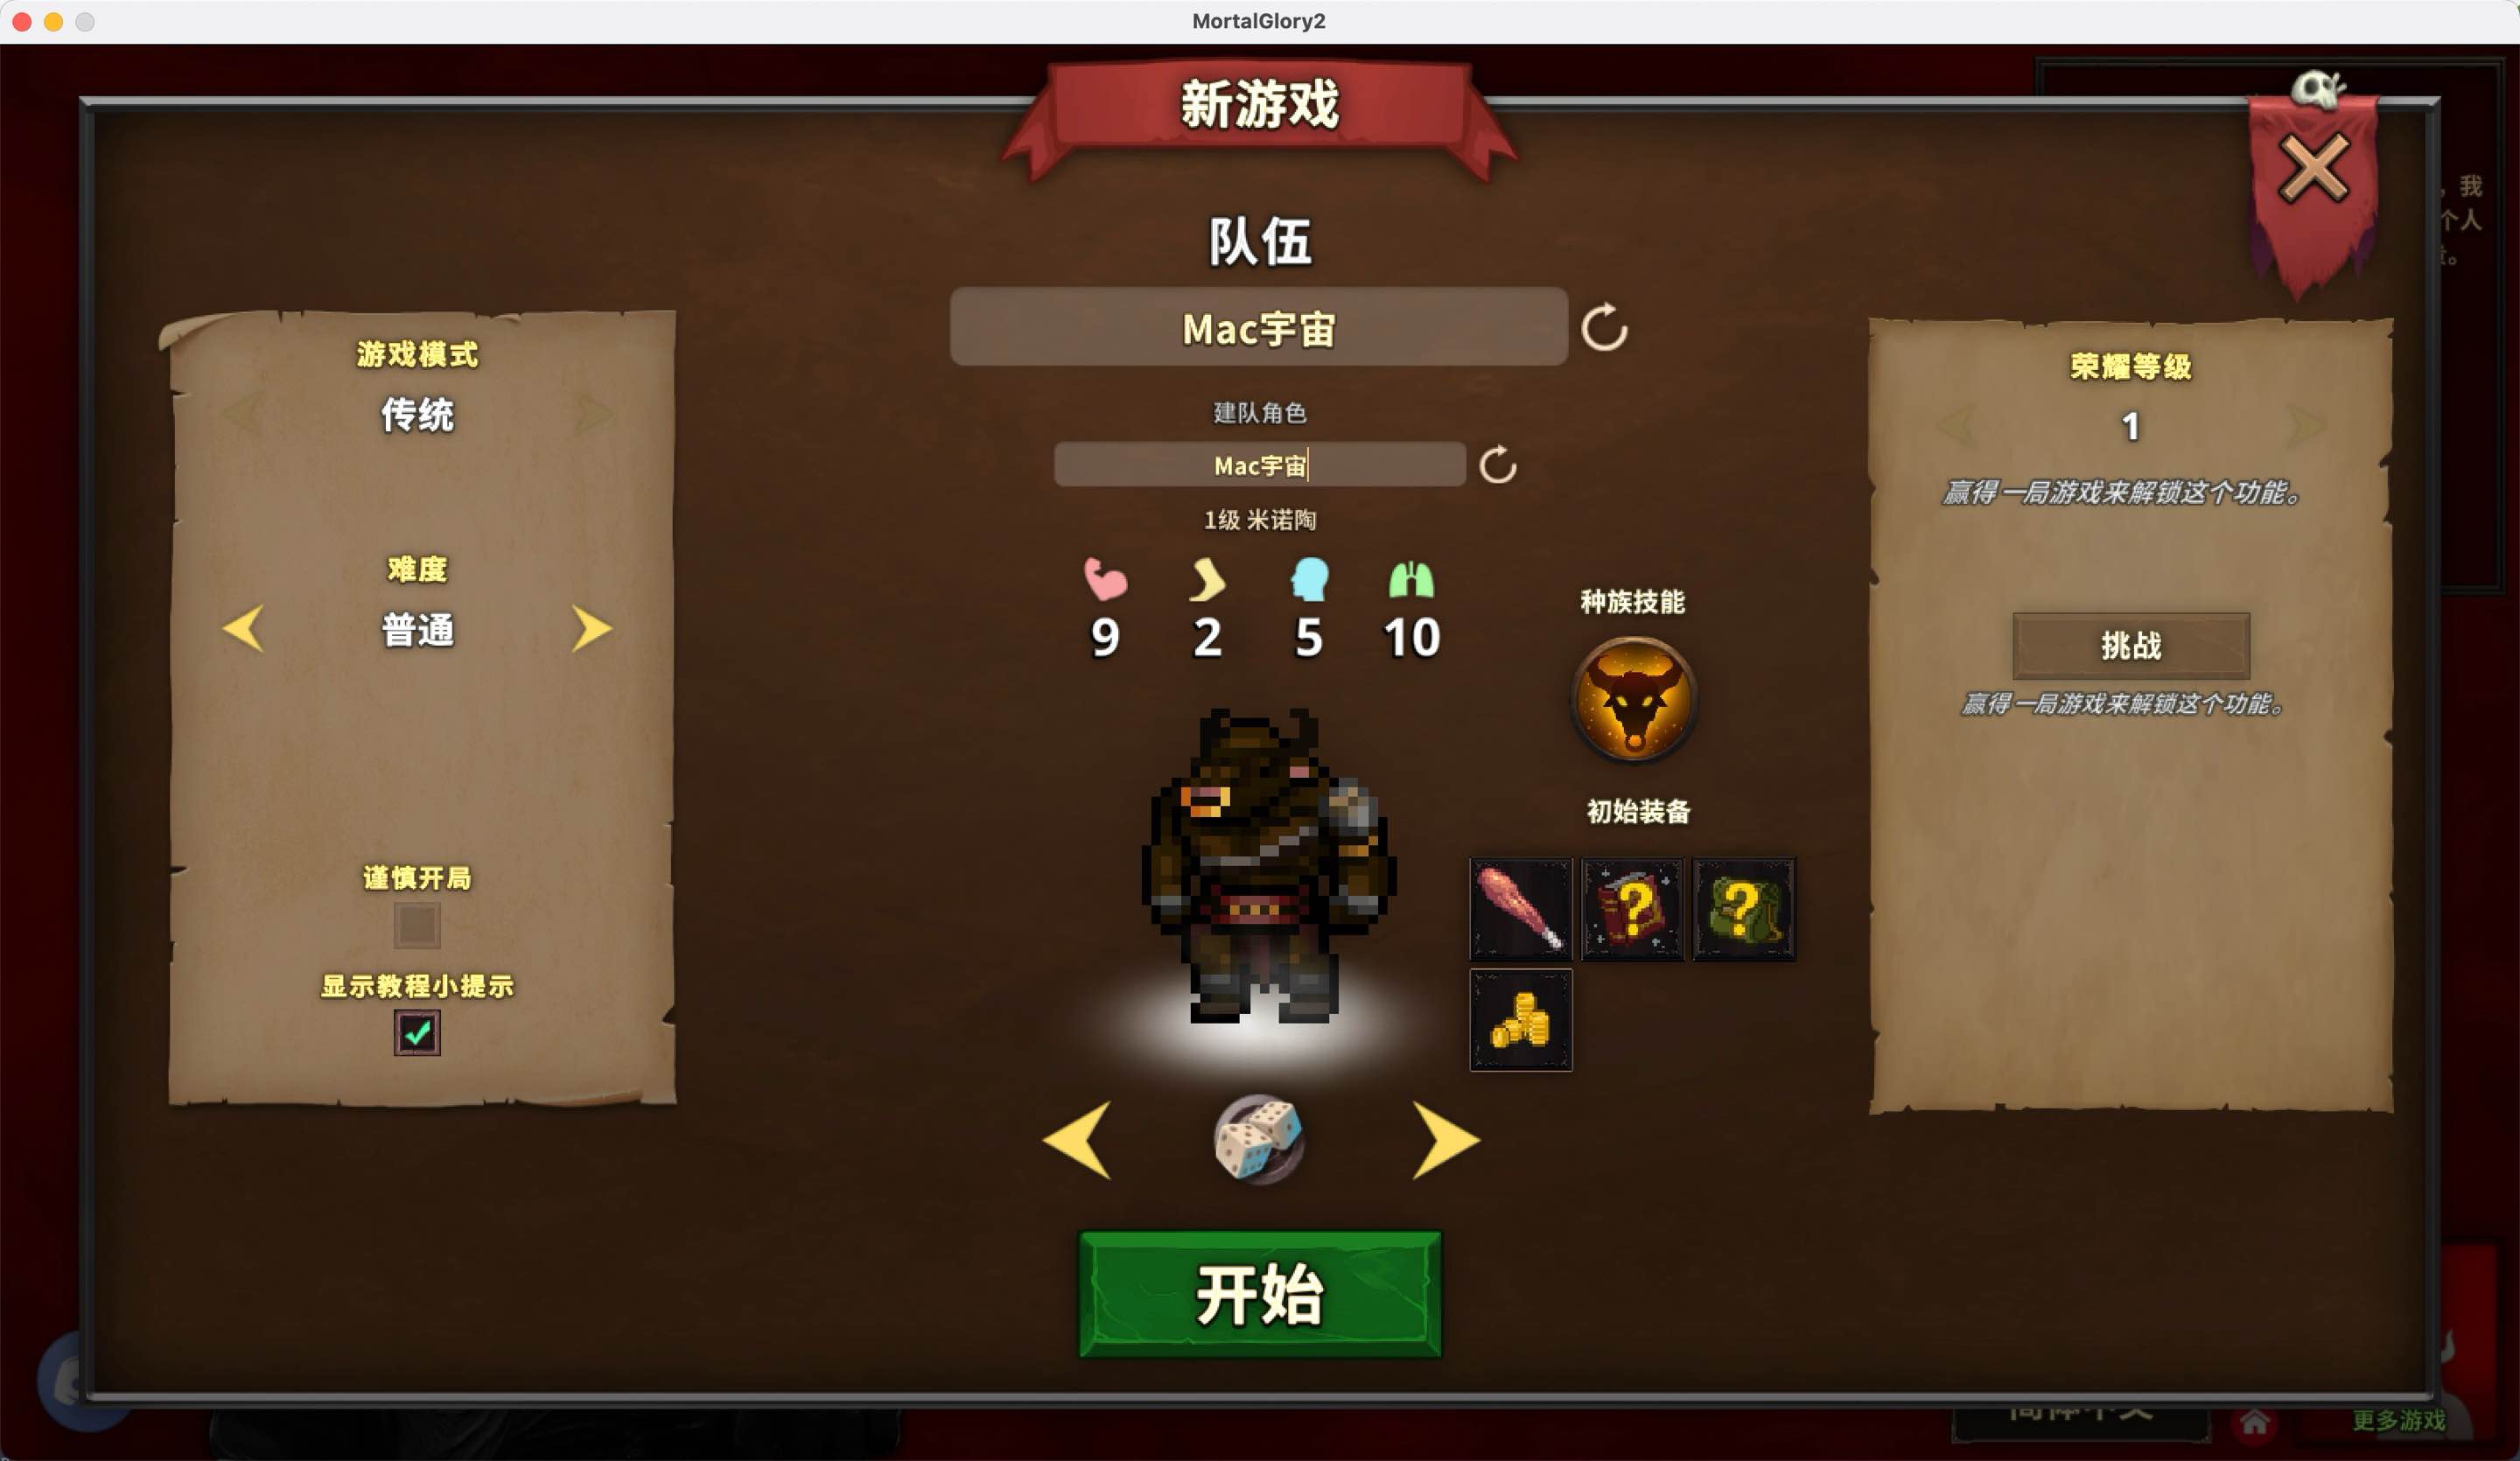 荣耀死斗2 for Mac Mortal Glory 2 v1.0 中文移植版 苹果电脑